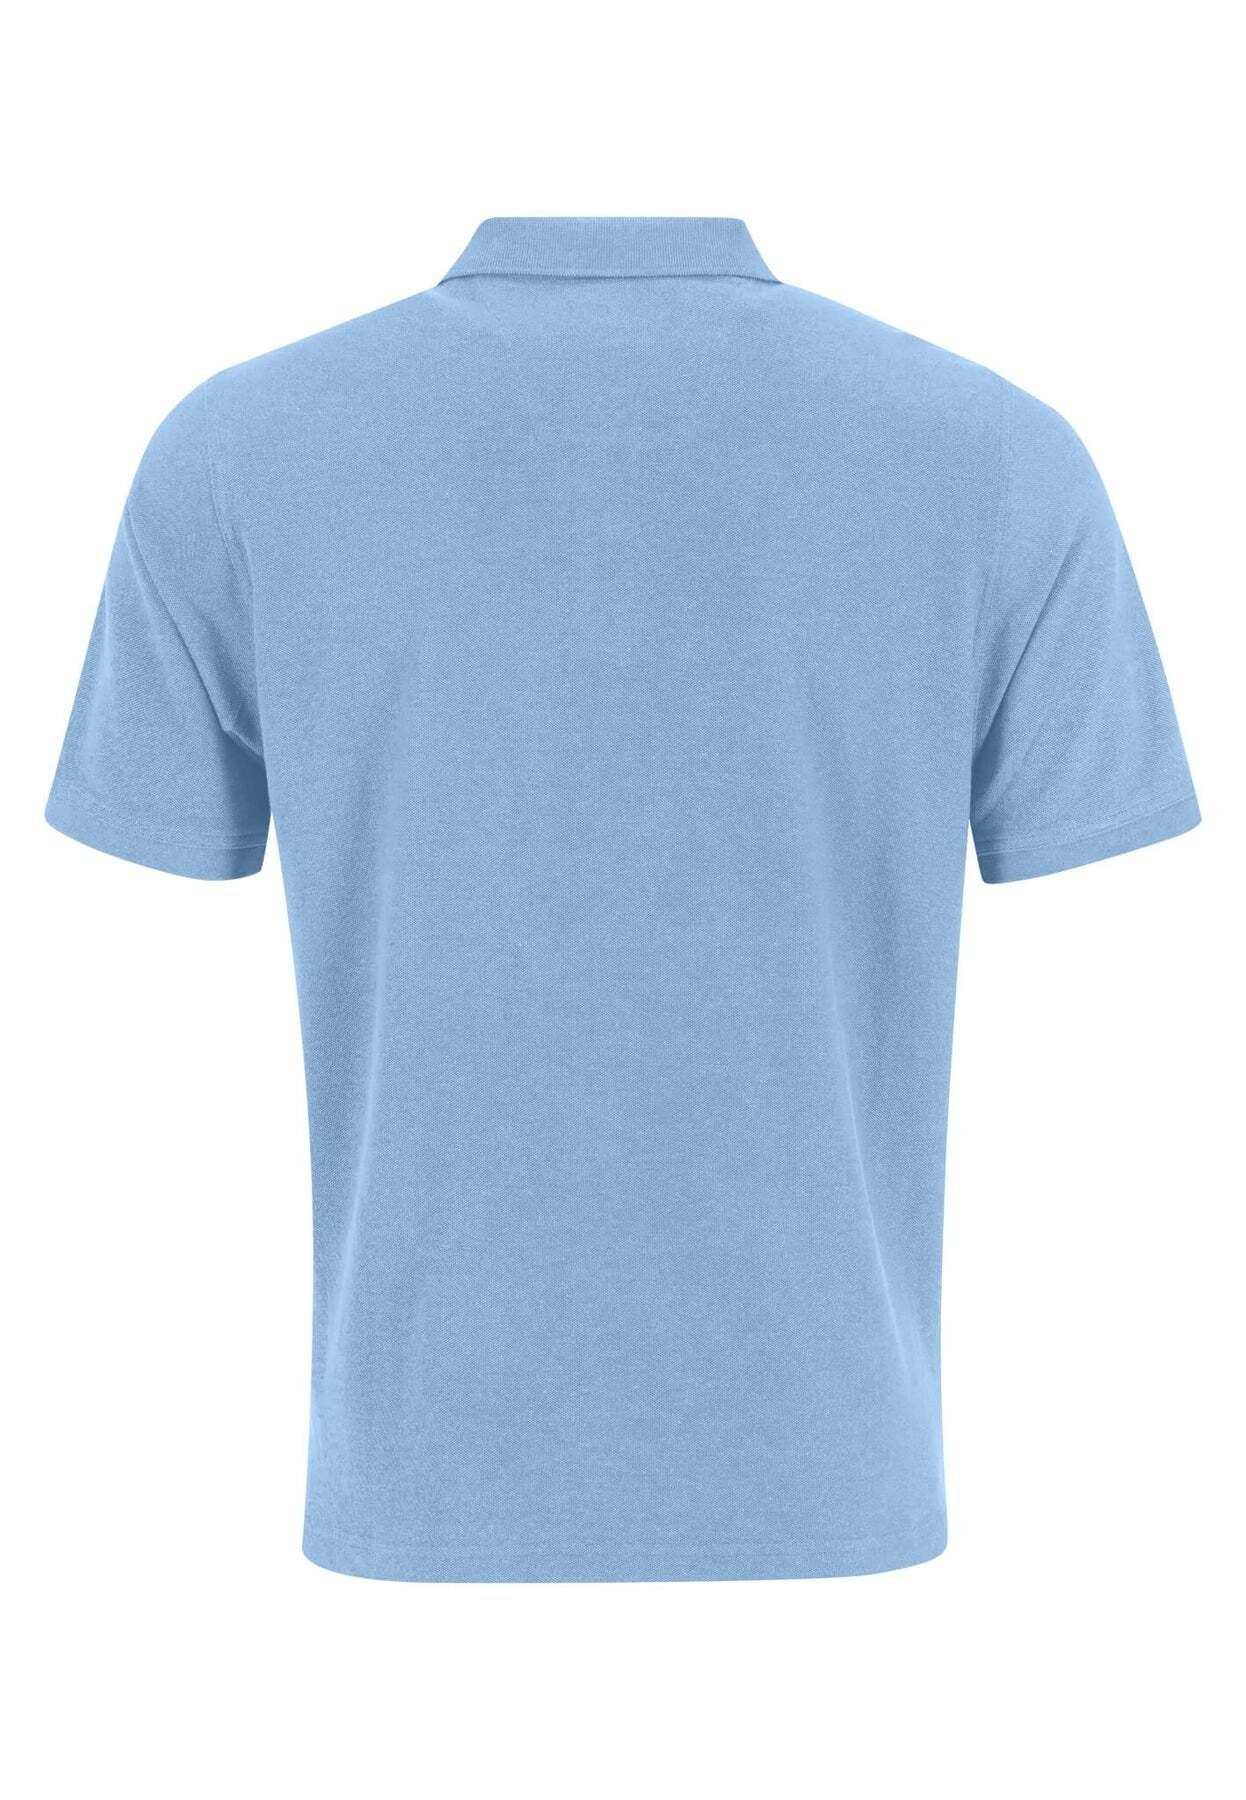 Poloshirt Polokragen mit blau FYNCH-HATTON Poloshirt Kurzarmshirt